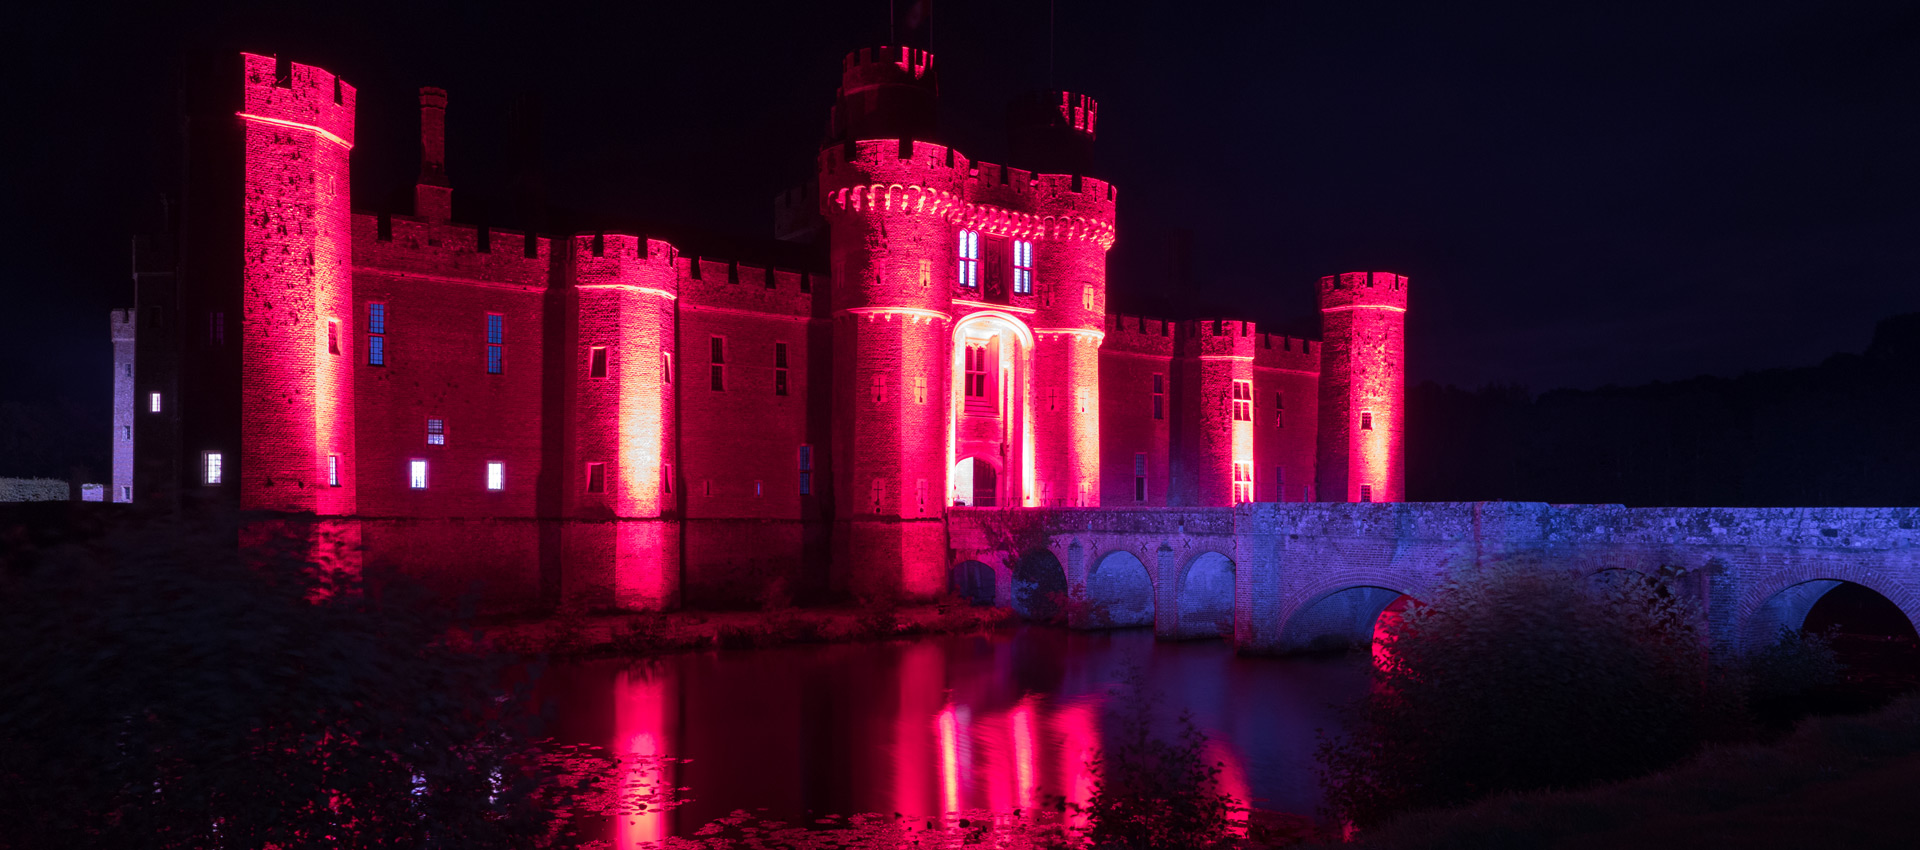 Herstmonceux Castle lit in red